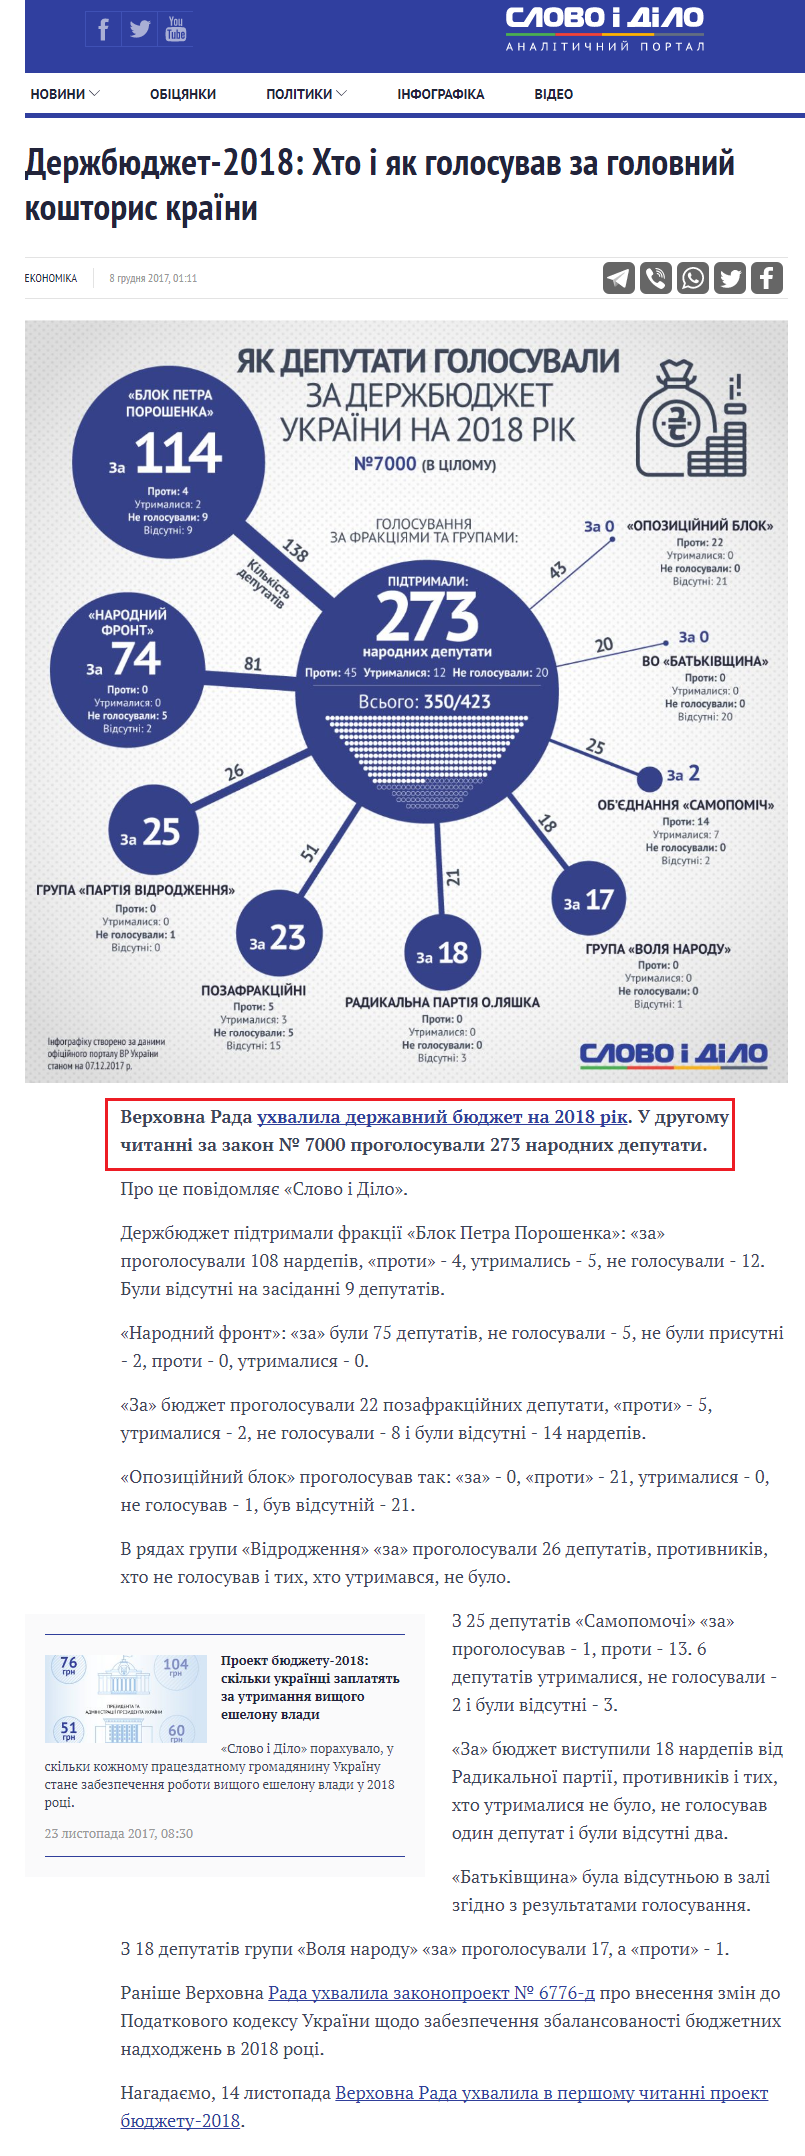 https://www.slovoidilo.ua/2017/12/08/infografika/ekonomika/derzhbyudzhet-2018-xto-yak-holosuvav-holovnyj-koshtorys-krayiny